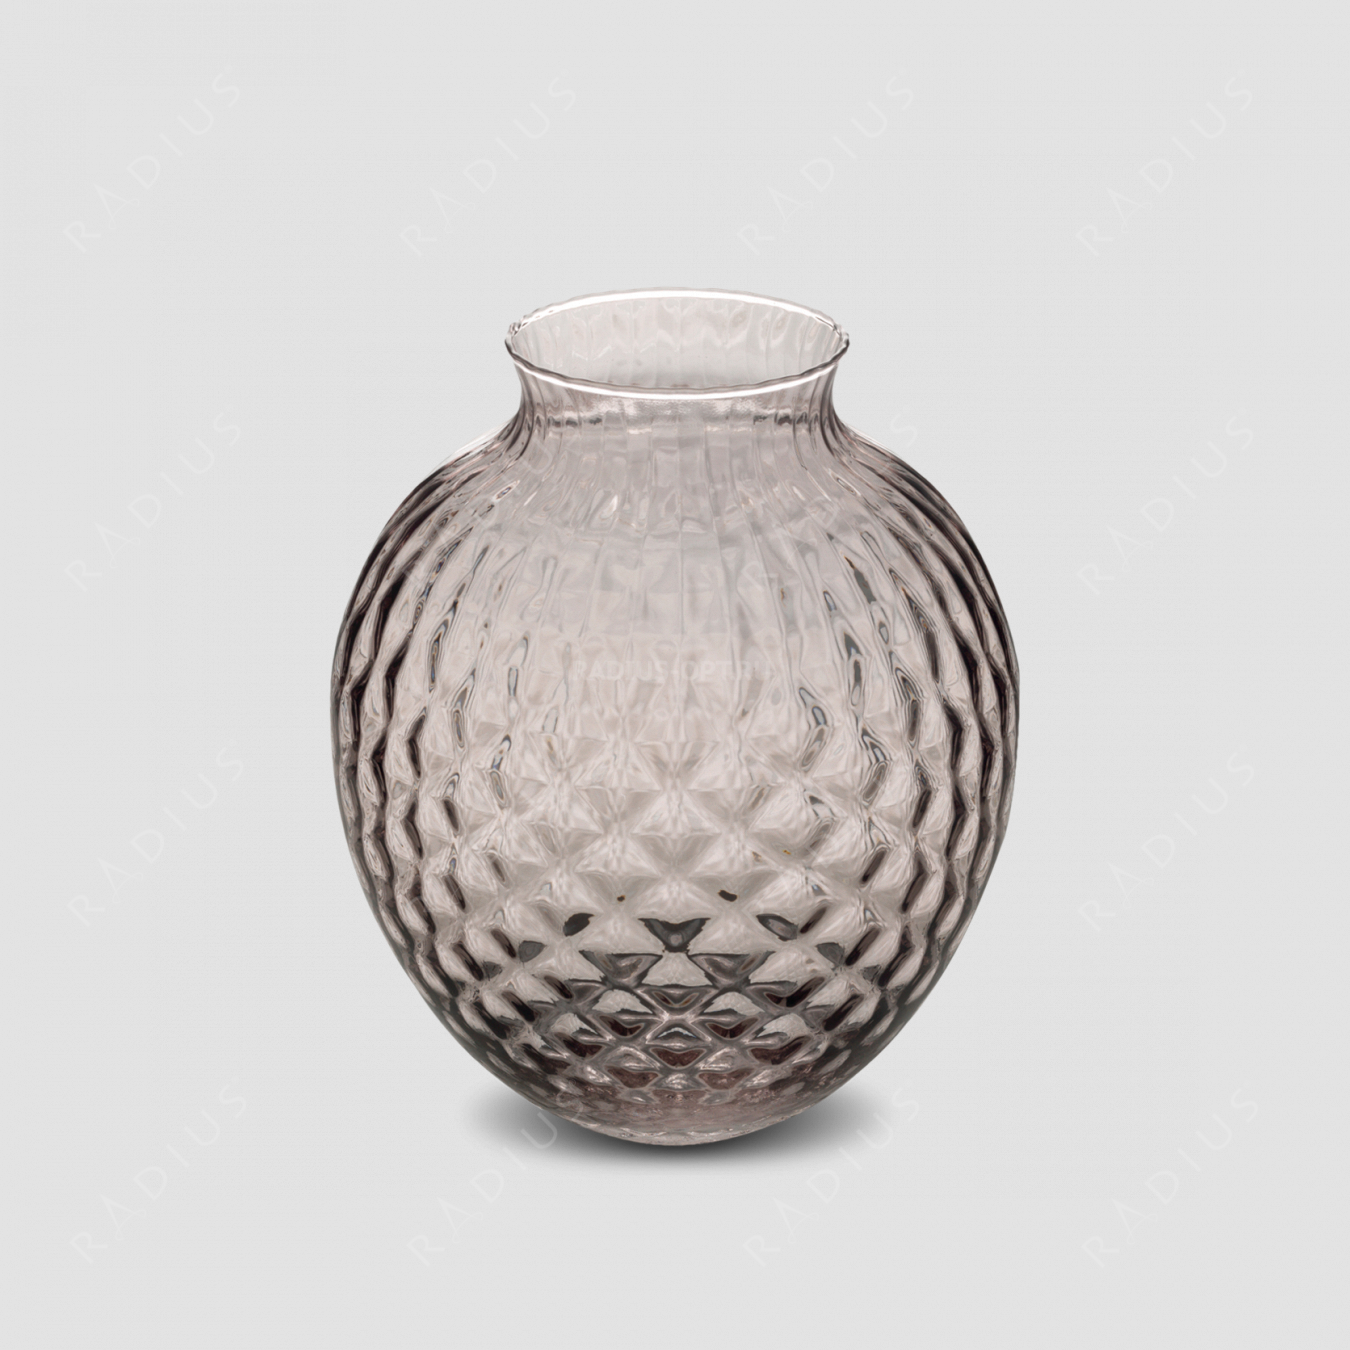 Стеклянная ваза для цветов, диаметр: 19,7 см, высота: 25 см, материал: стекло, цвет: дымчатый, серия Infiore, IVV (Italy), Италия